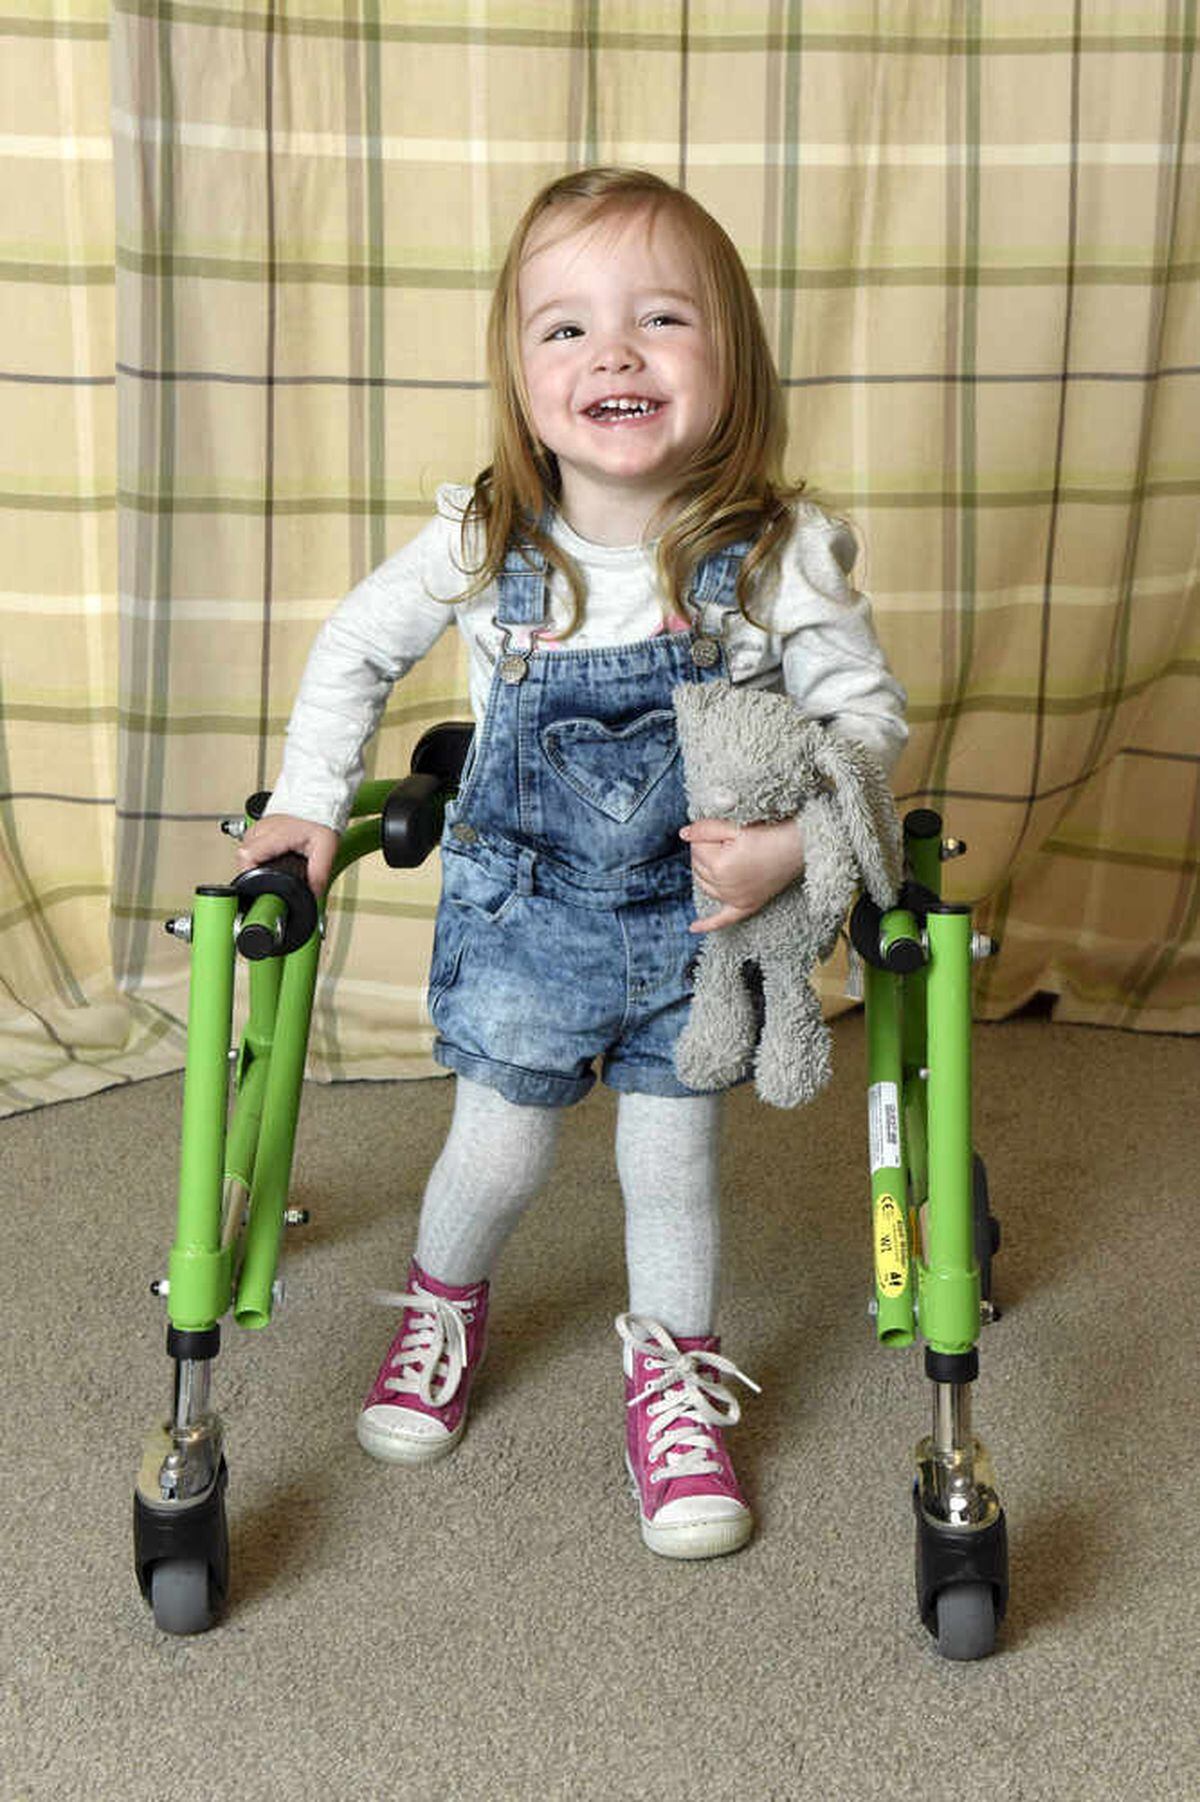 Millie has cerebral palsy